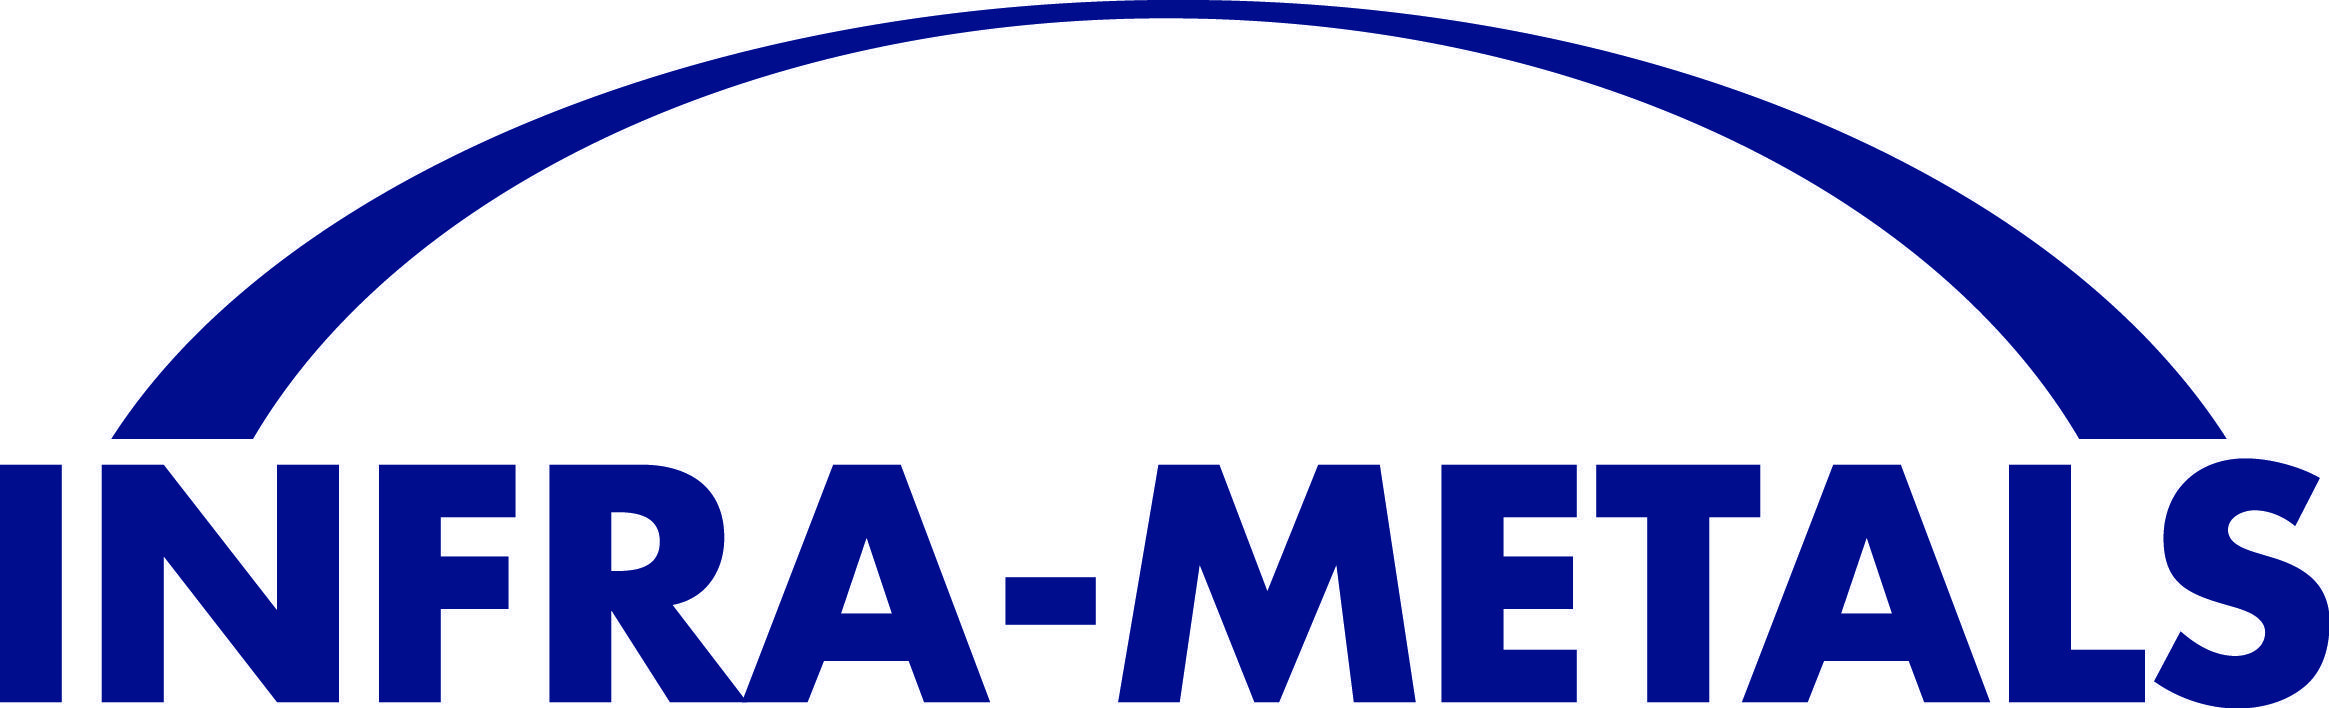 Metal S Logo - Home METALS. CUSTOMER SATISFACTION BUILT WITH STEEL